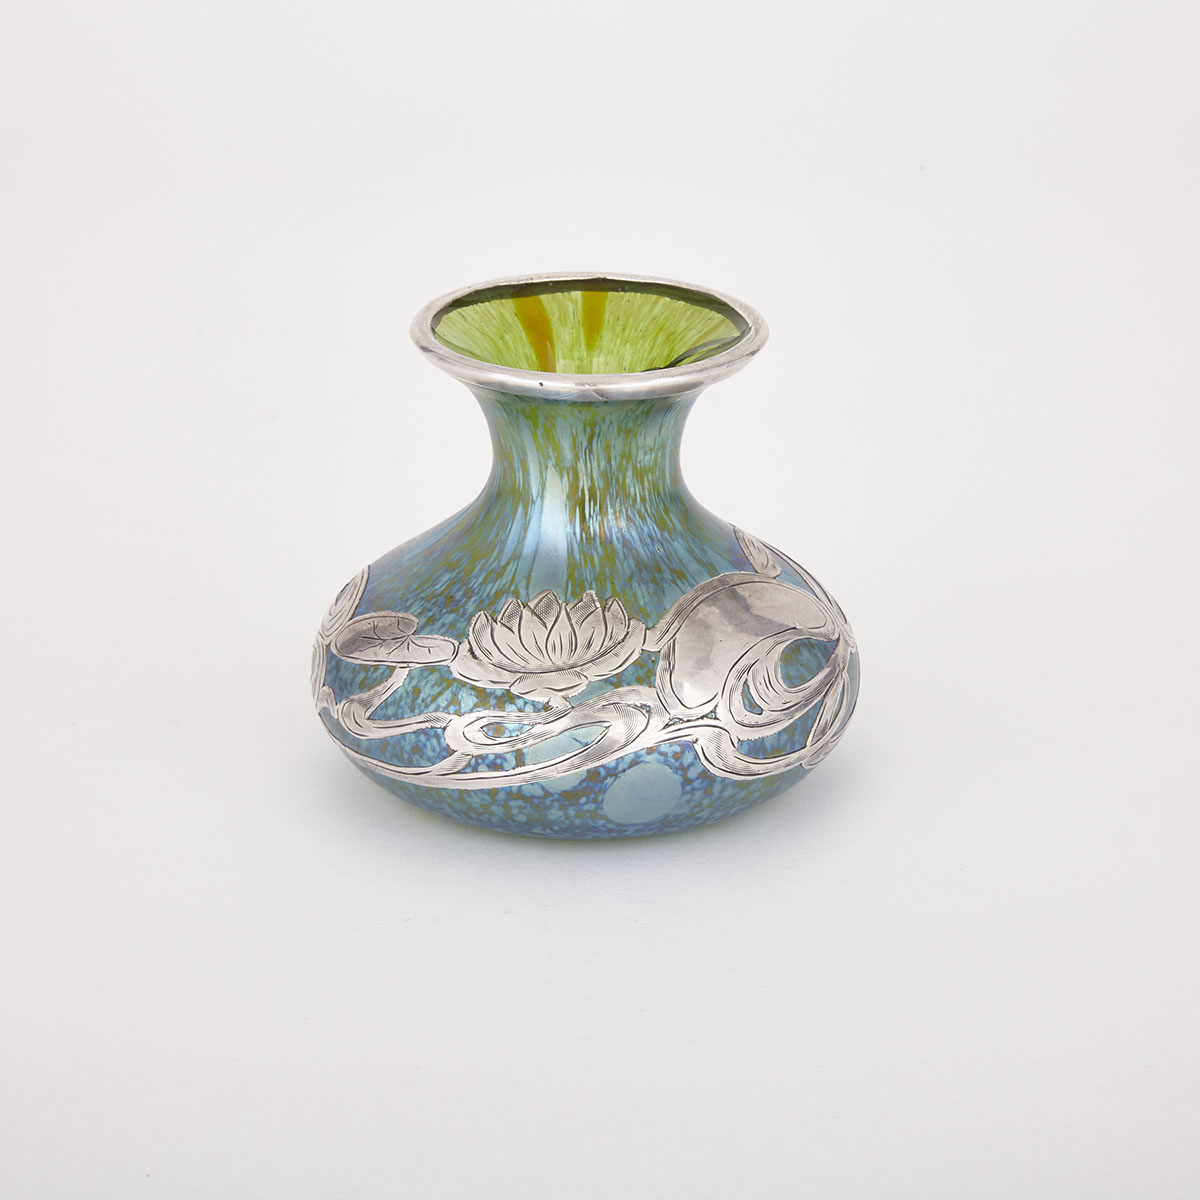 Loetz Silver Overlaid ‘Papillon’ Glass Vase, c.1900